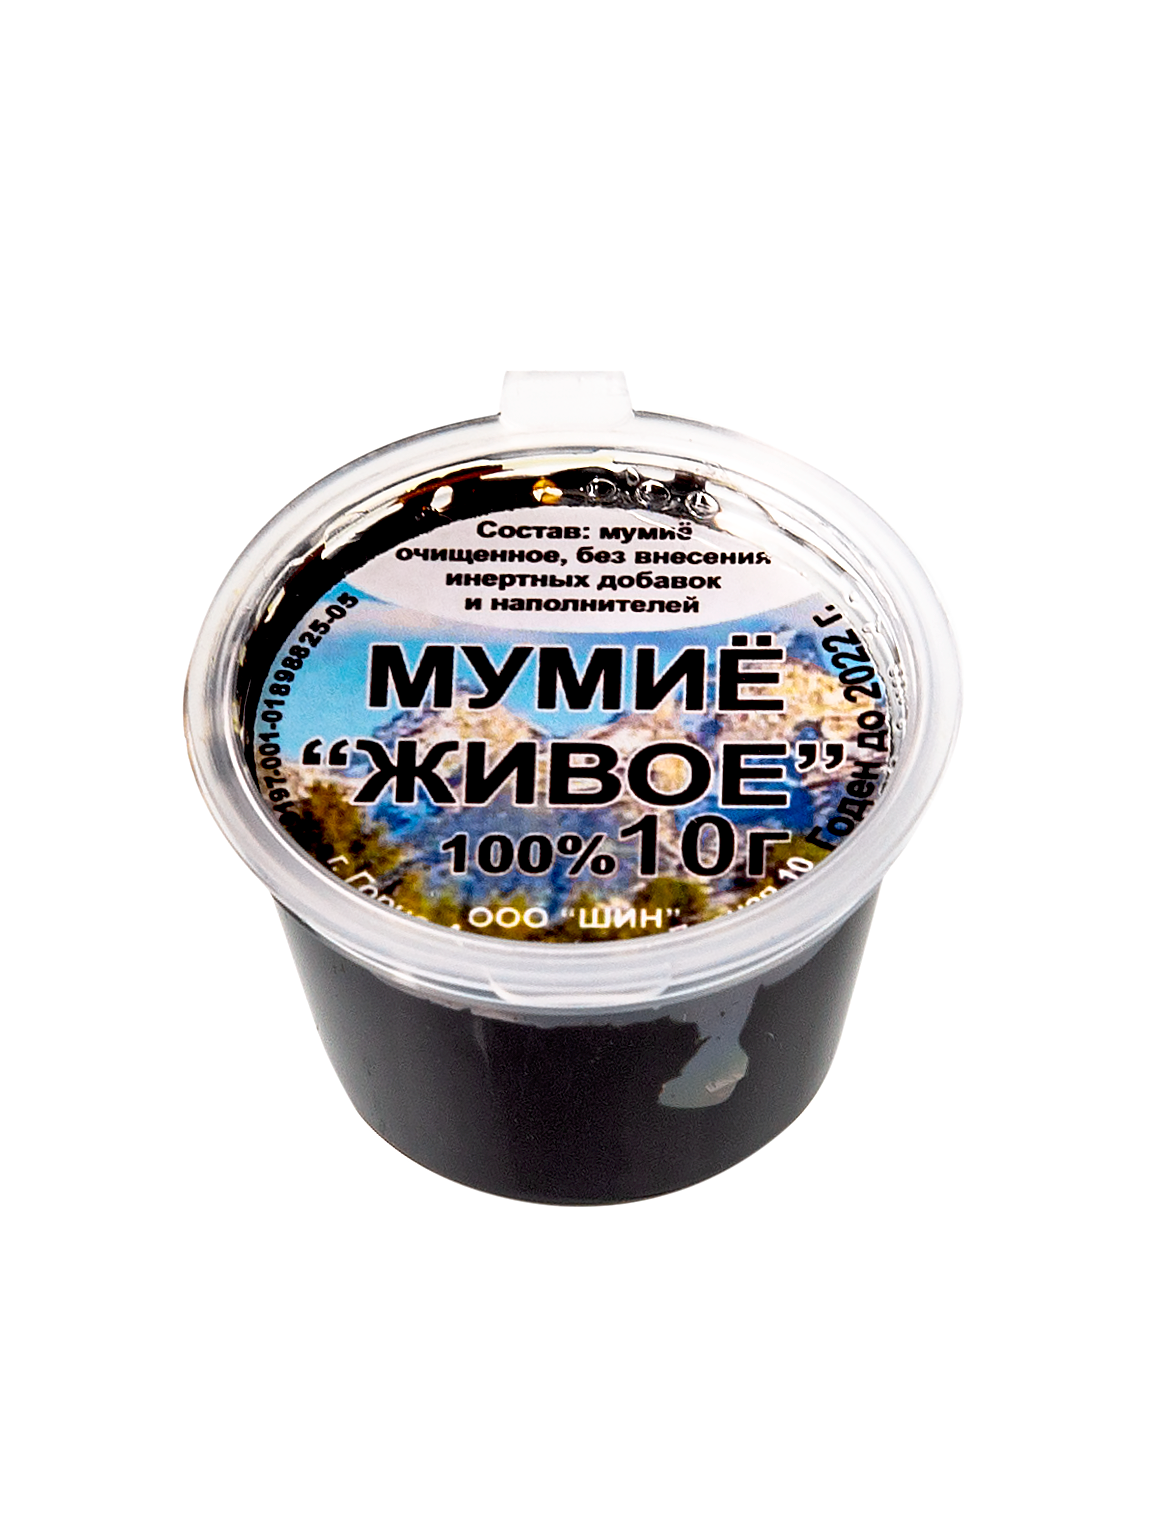 Мумиё Алтайское без добавок в Новосибирске